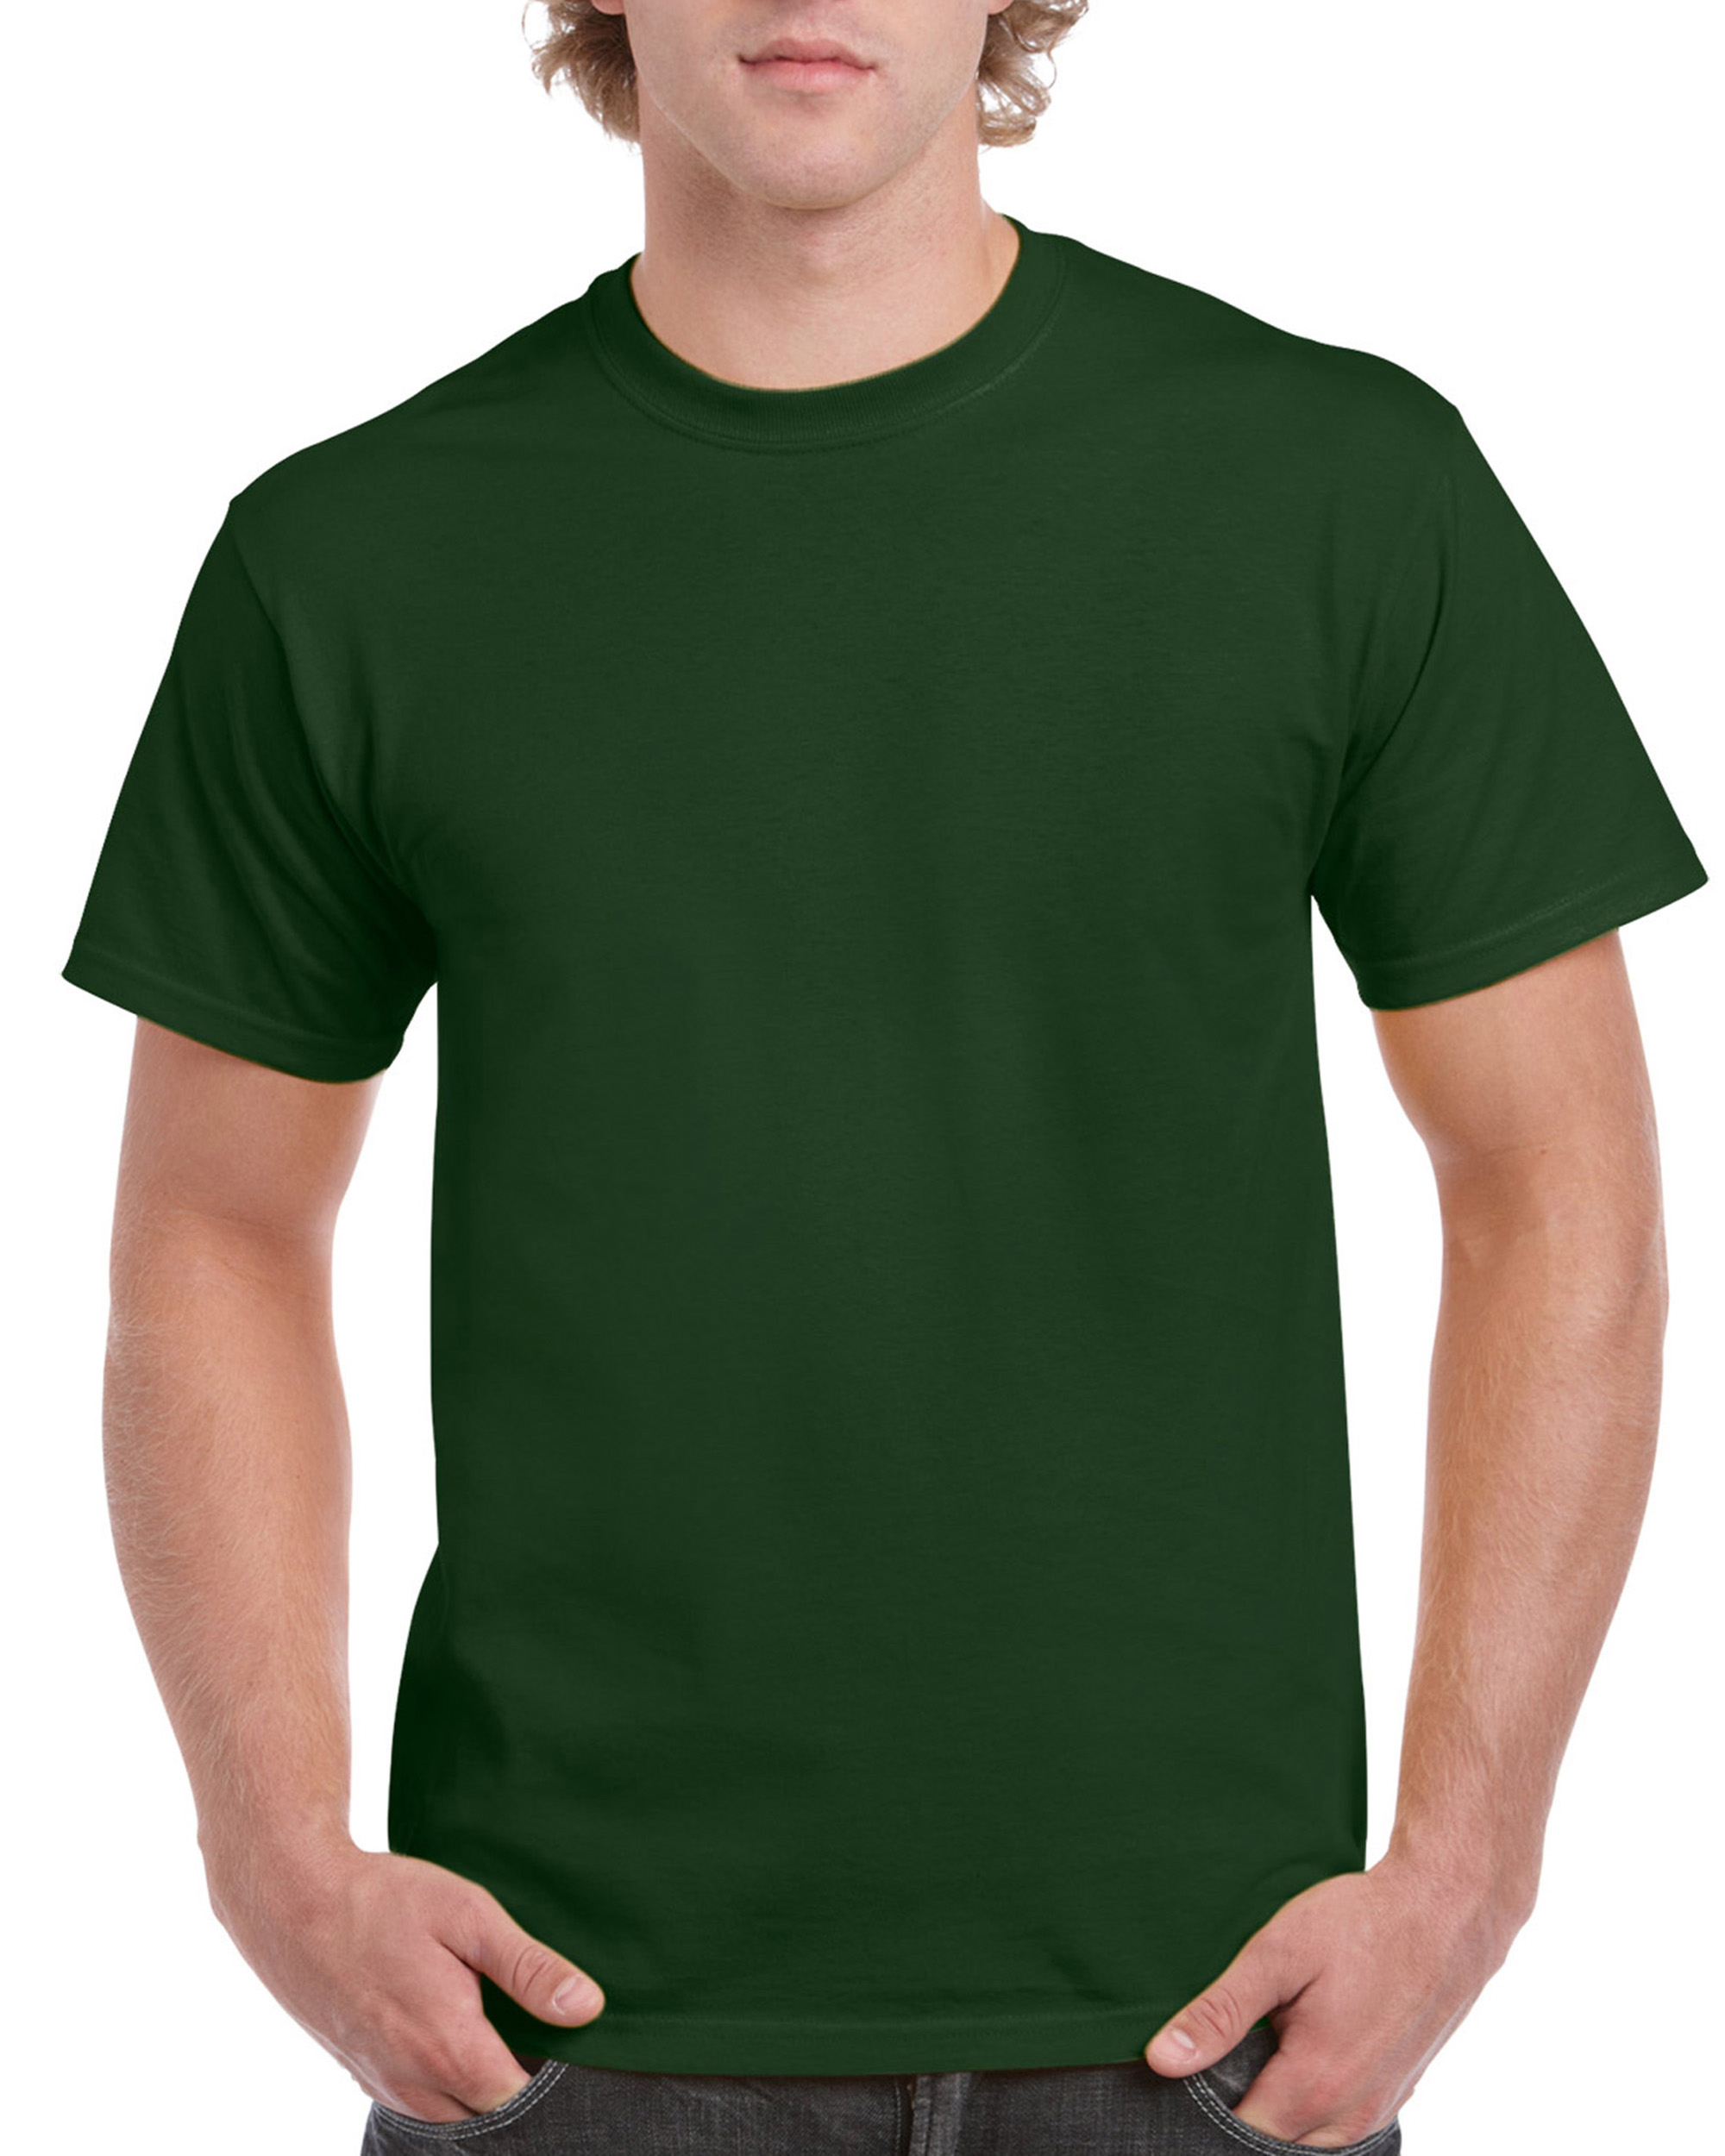 T-shirt Ultra Cotton GILDAN